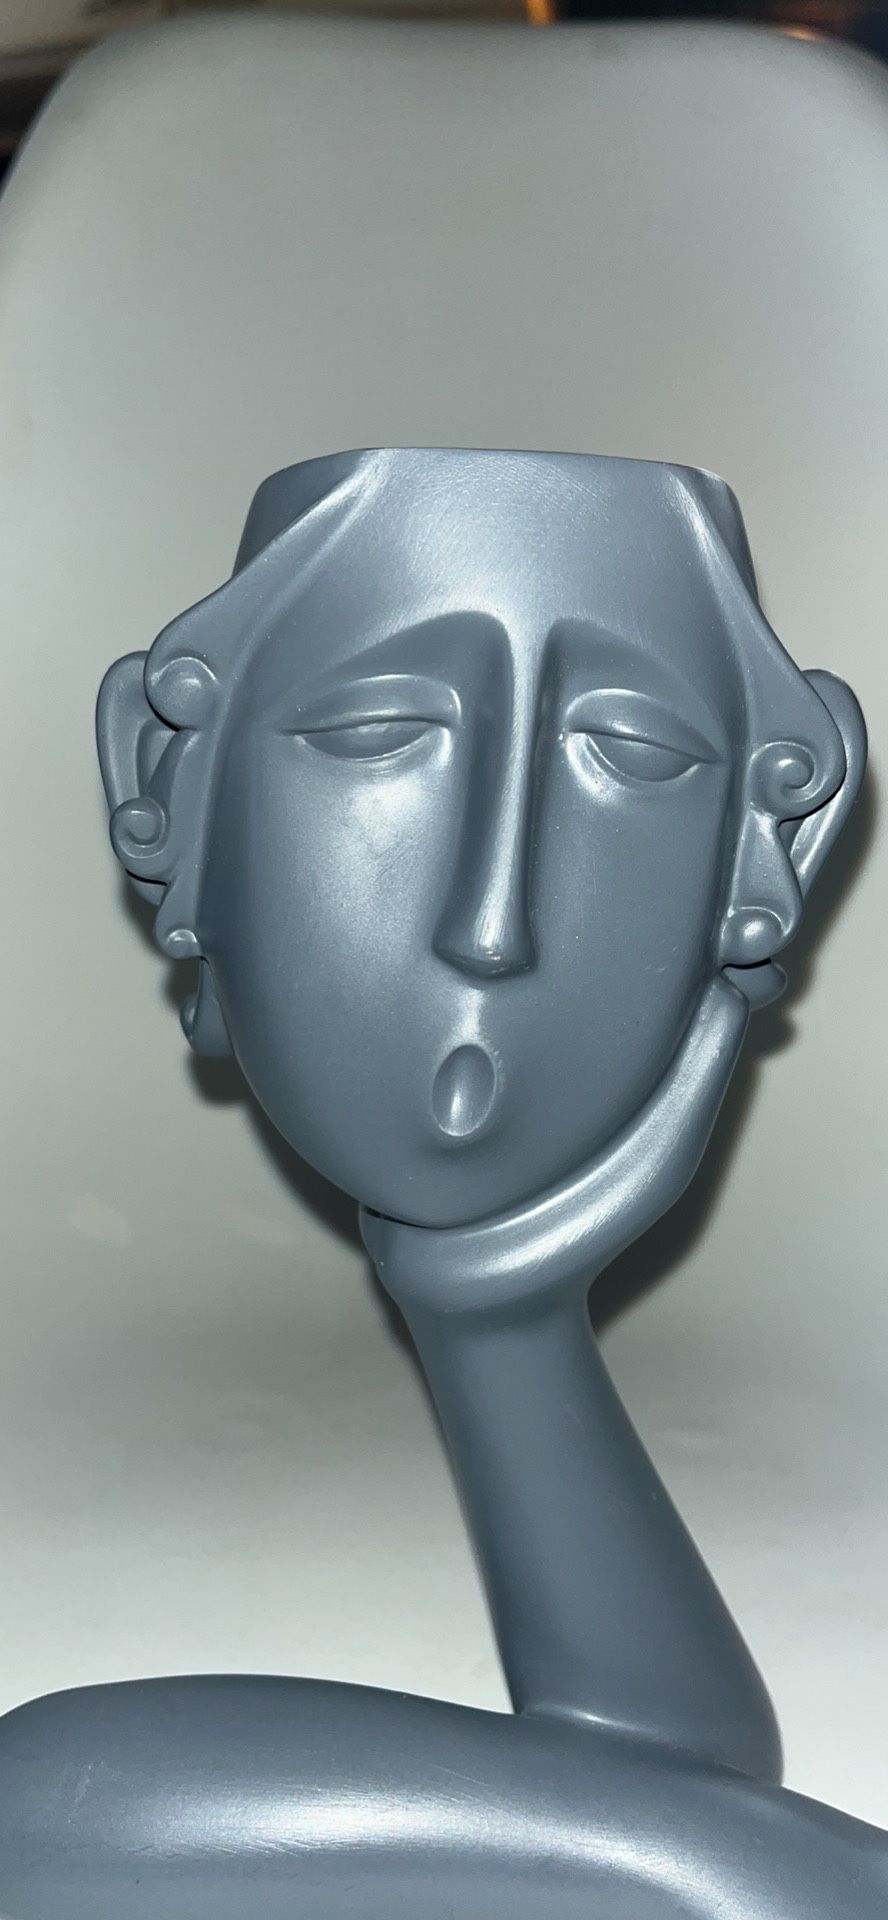 Human Face Form Planter Succulent Planter Vase Abstract Statue Creative Portrait Vase Decorative Resin 